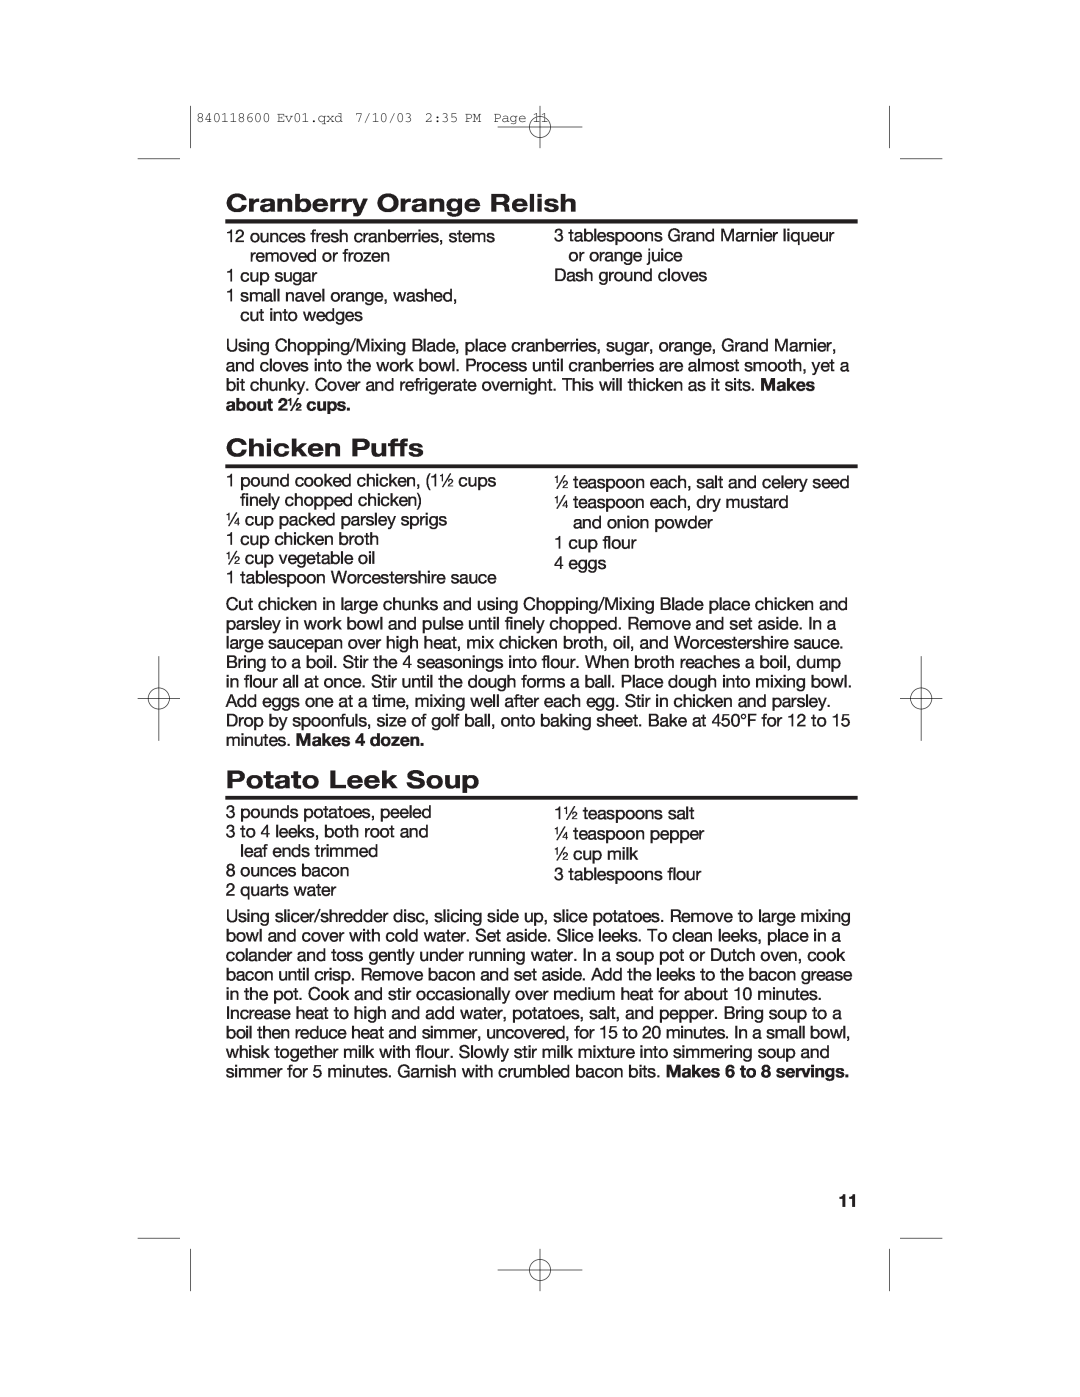 Hamilton Beach 70550RC manual Cranberry Orange Relish, Chicken Puffs, Potato Leek Soup 